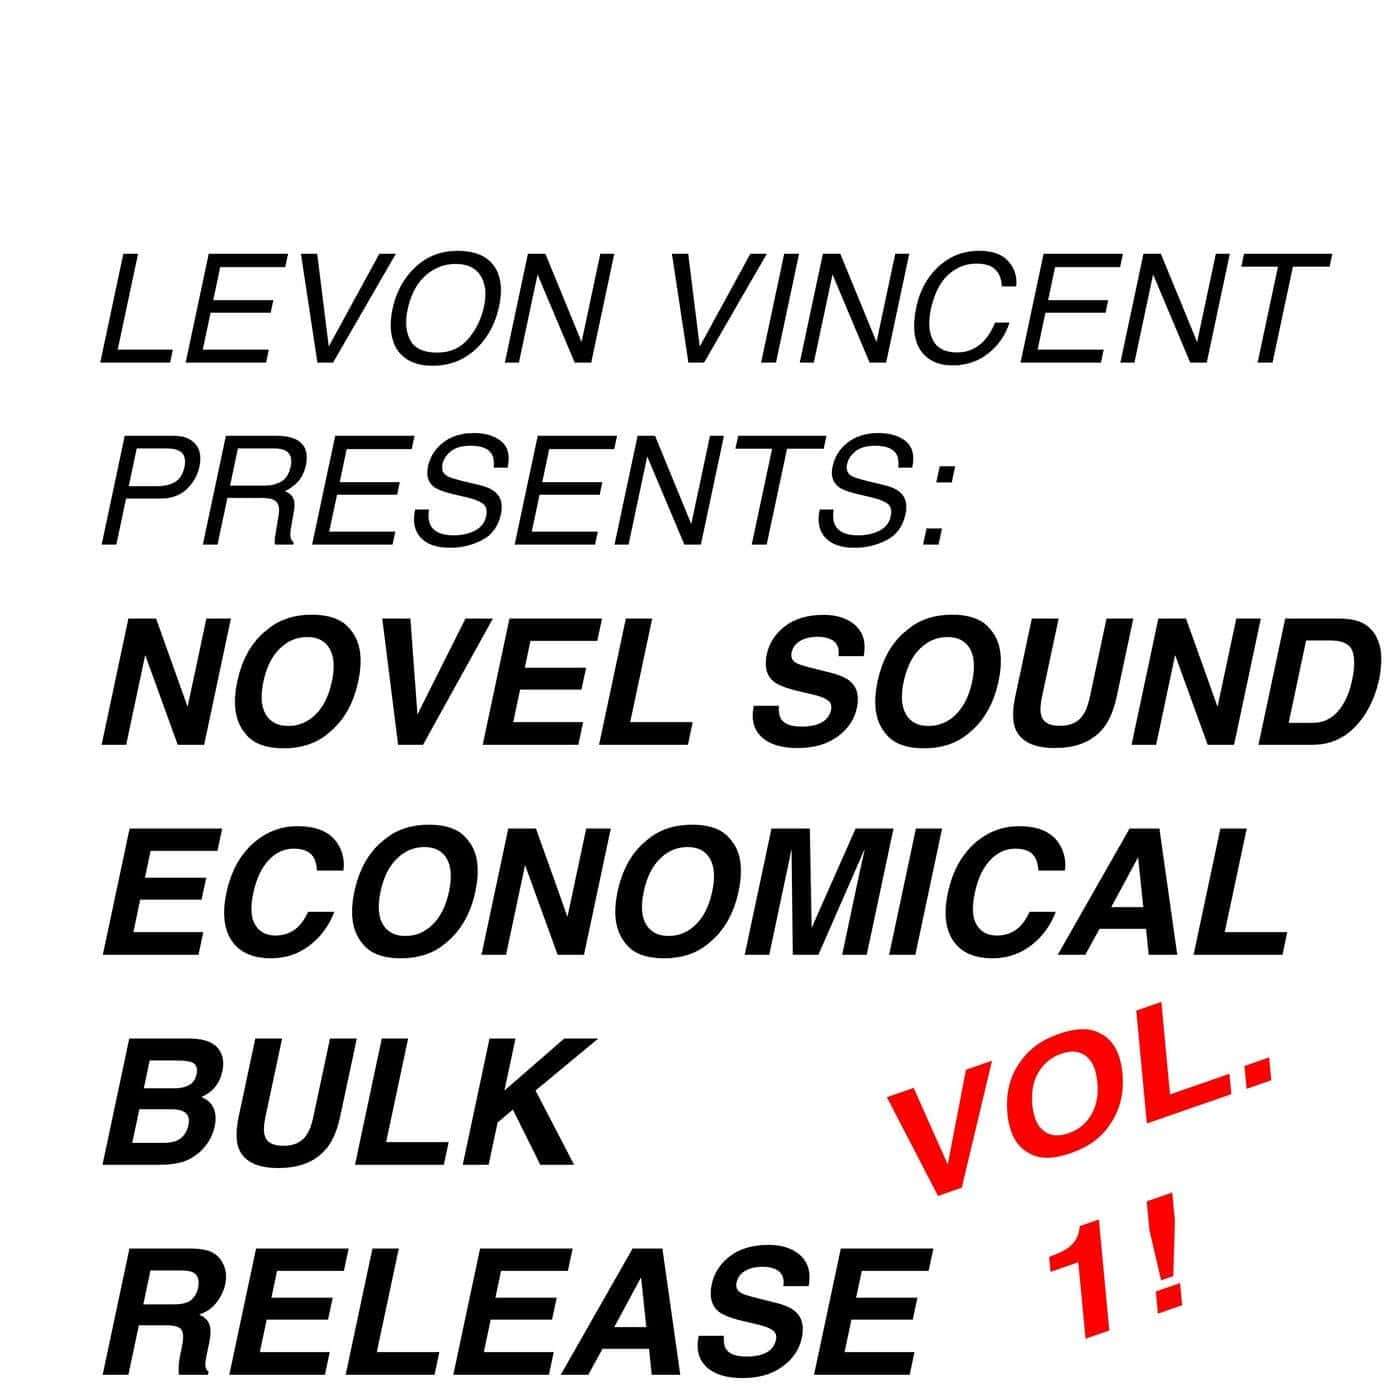 image cover: Levon Vincent - LEVON VINCENT PRESENTS: NOVEL SOUND ECONOMICAL BULK RELEASE / 197209876892